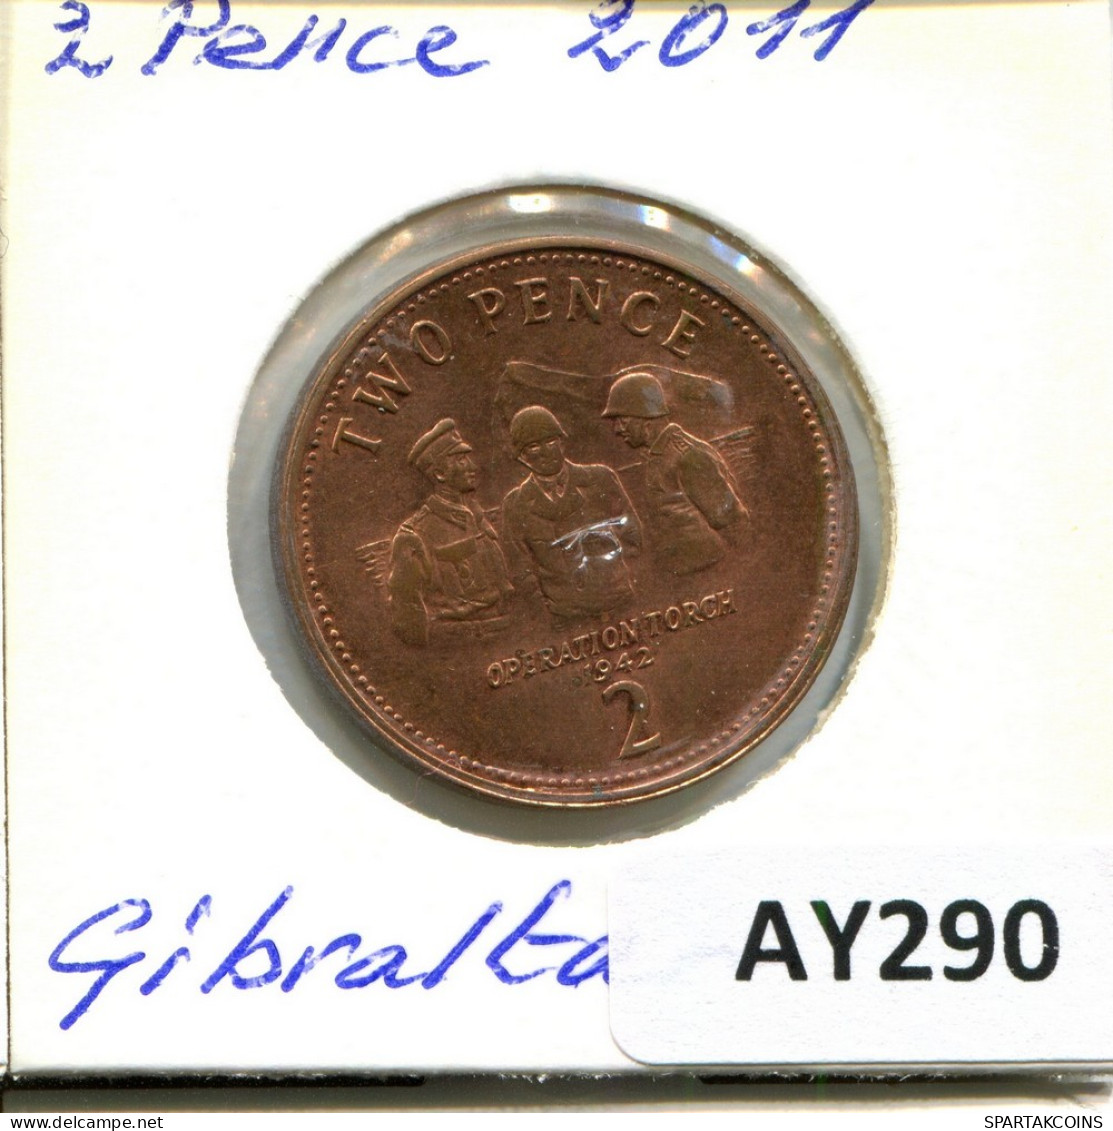 2 PENCE 2011 GIBRALTAR Münze #AY290.D - Gibraltar